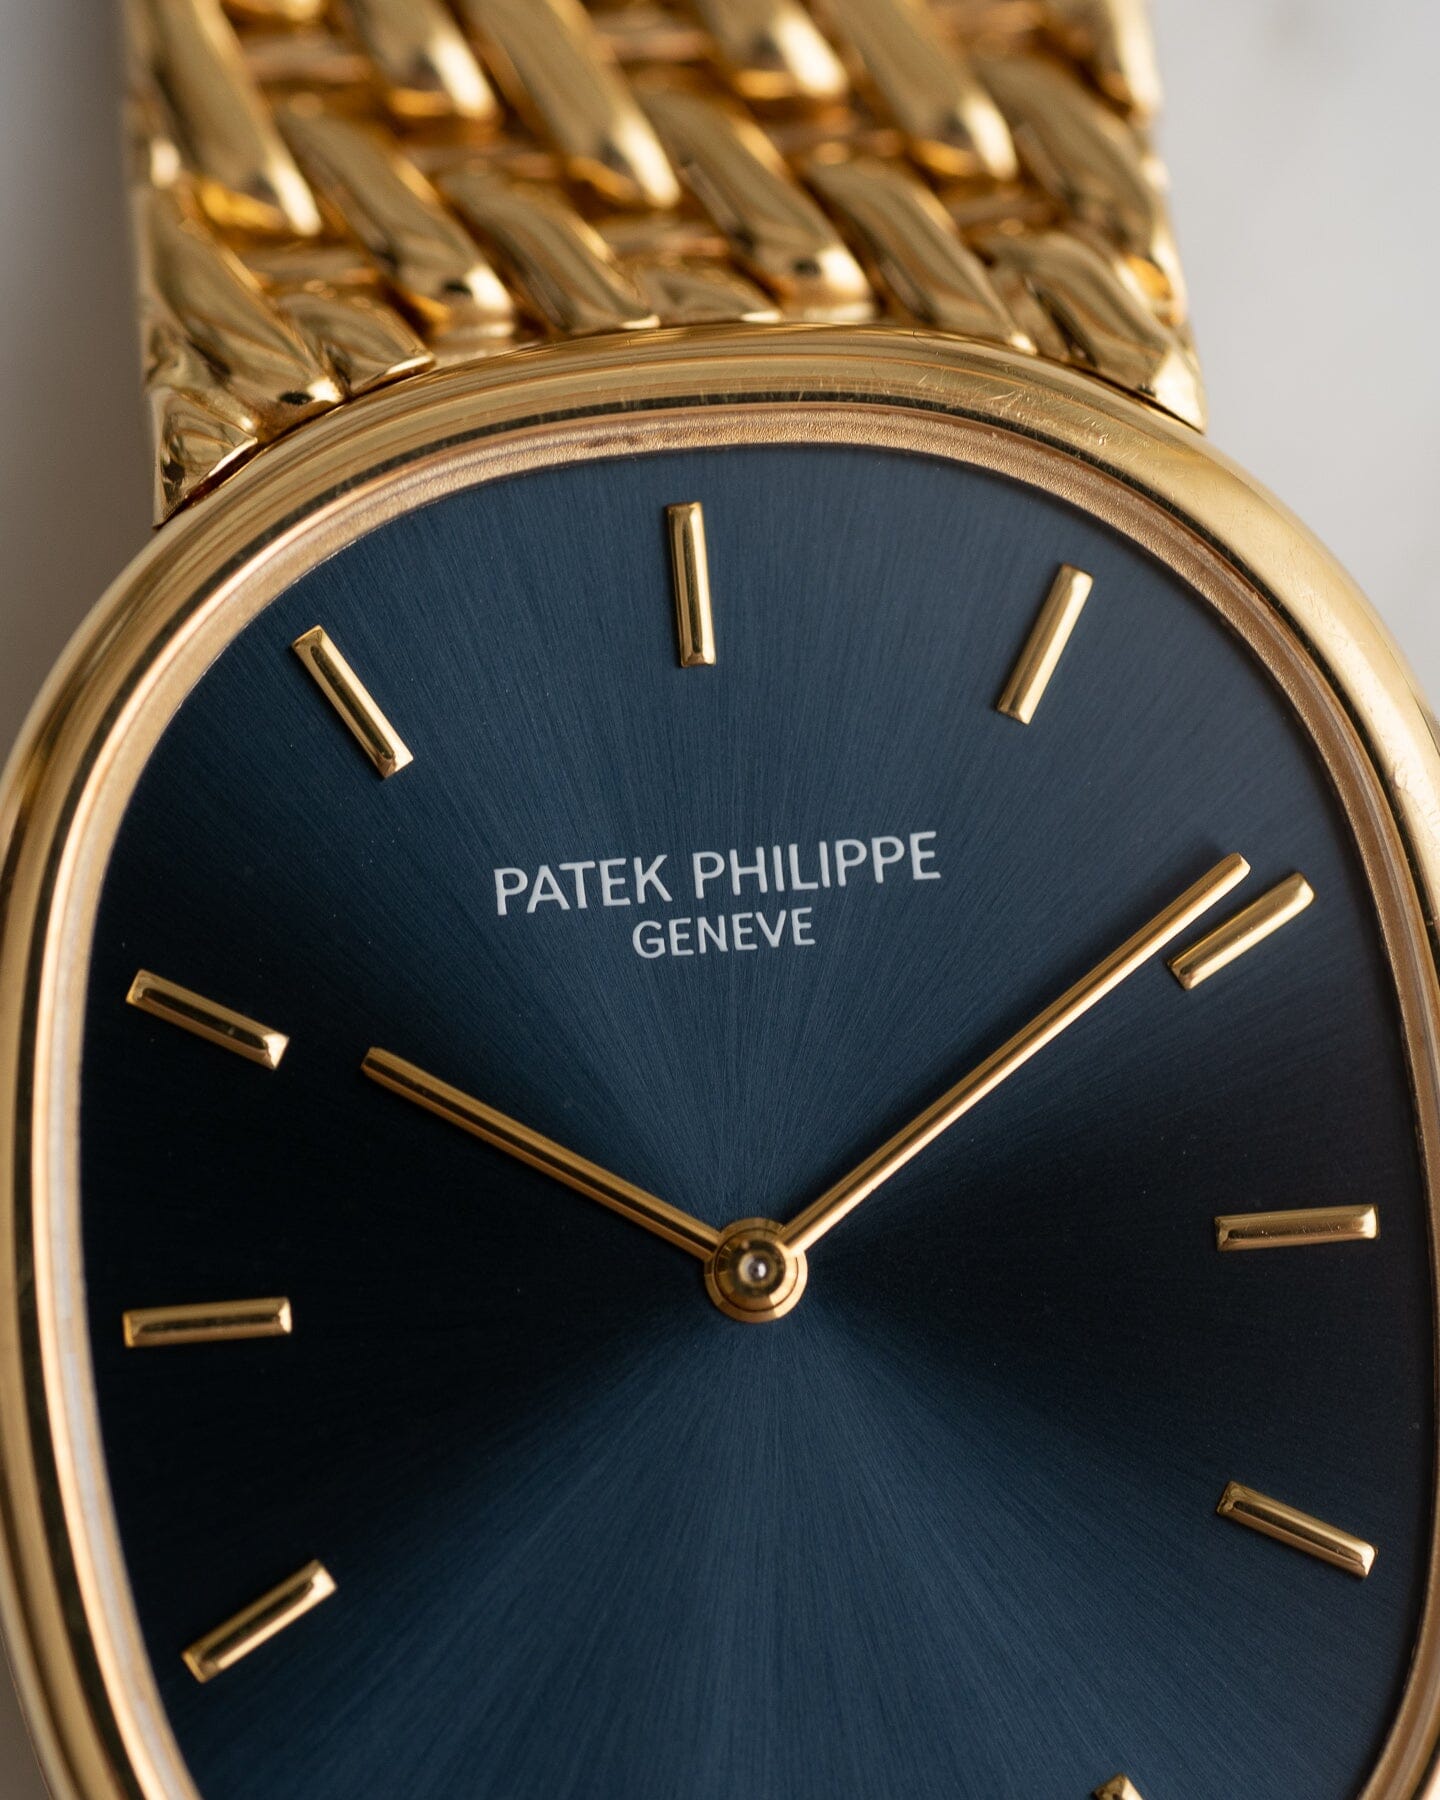 Patek Philippe ゴールデンエリプス 3848 YG ブルーシグマダイアル Watch PATEK PHILIPPE 